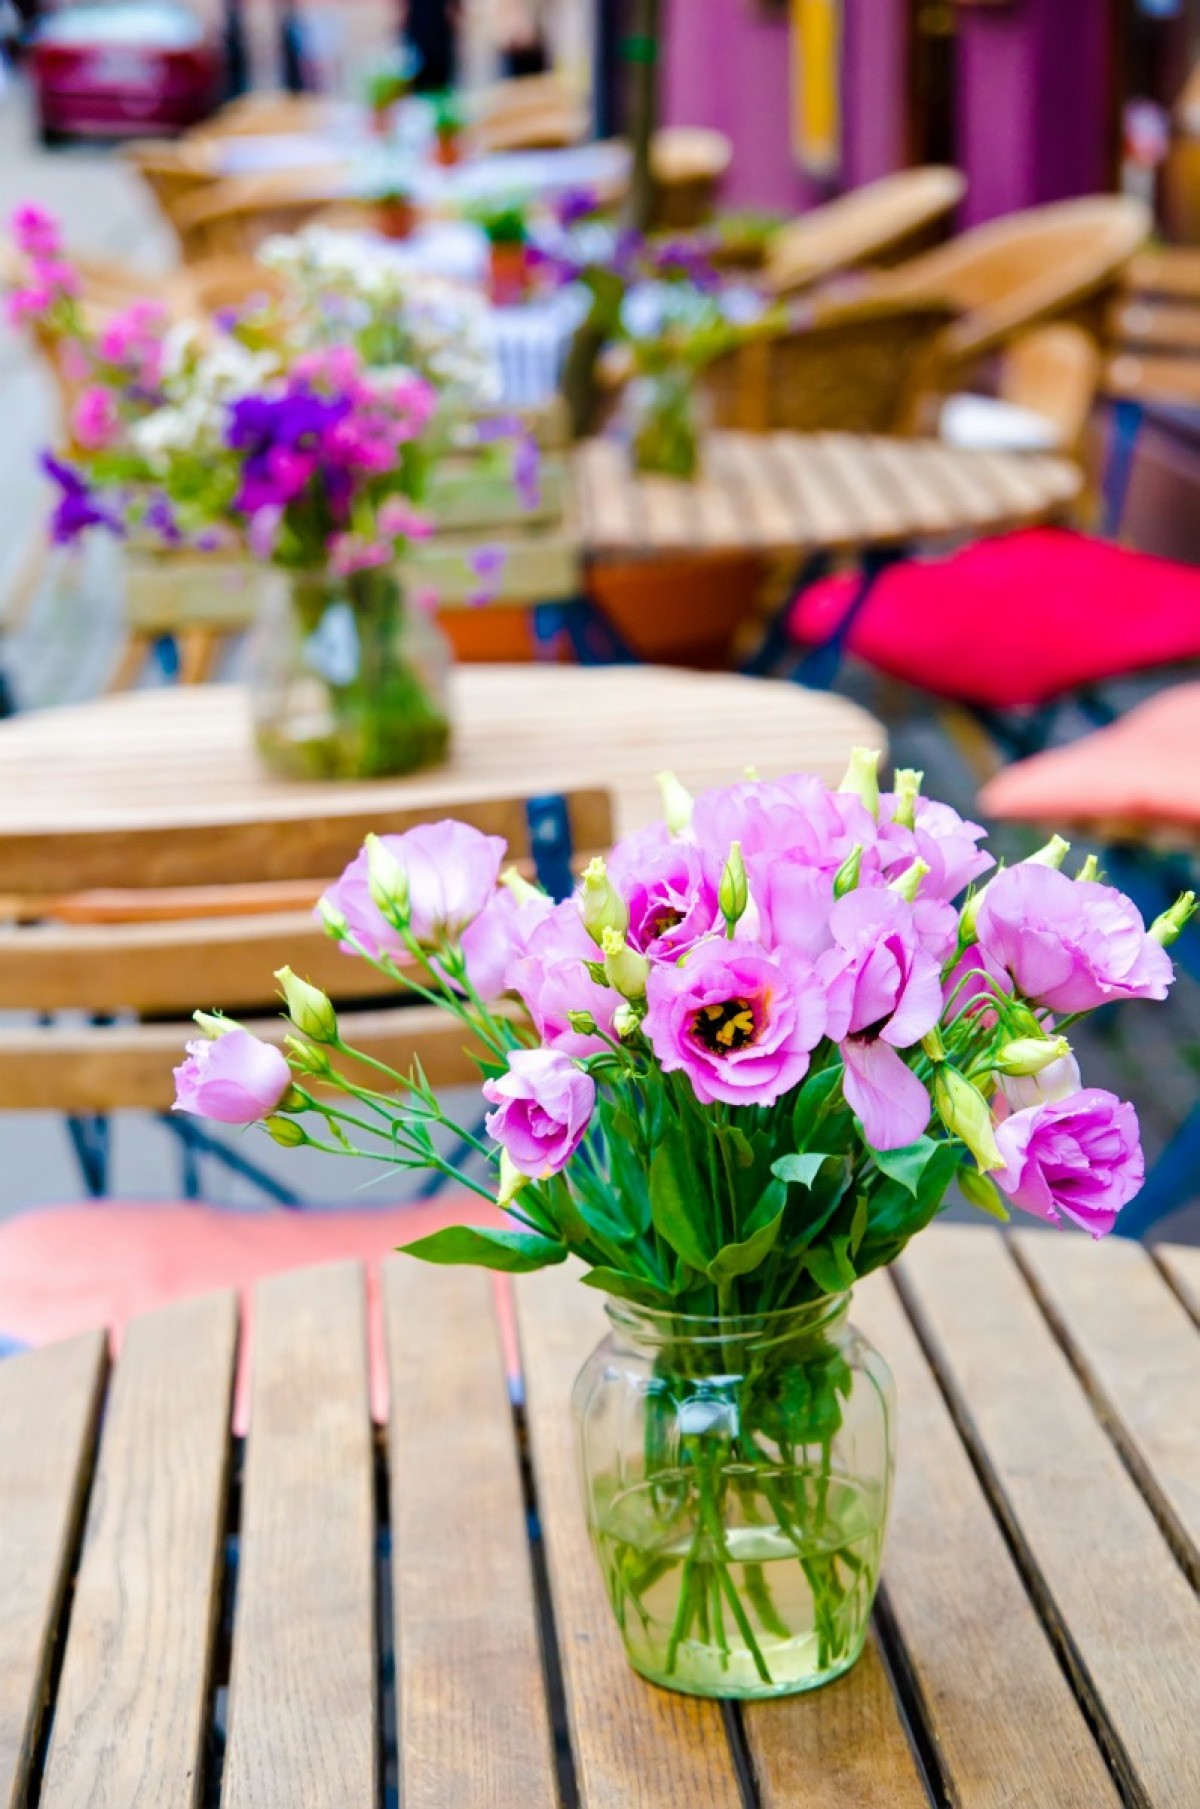 Saving Money on Floral Arrangements | ThriftyFun